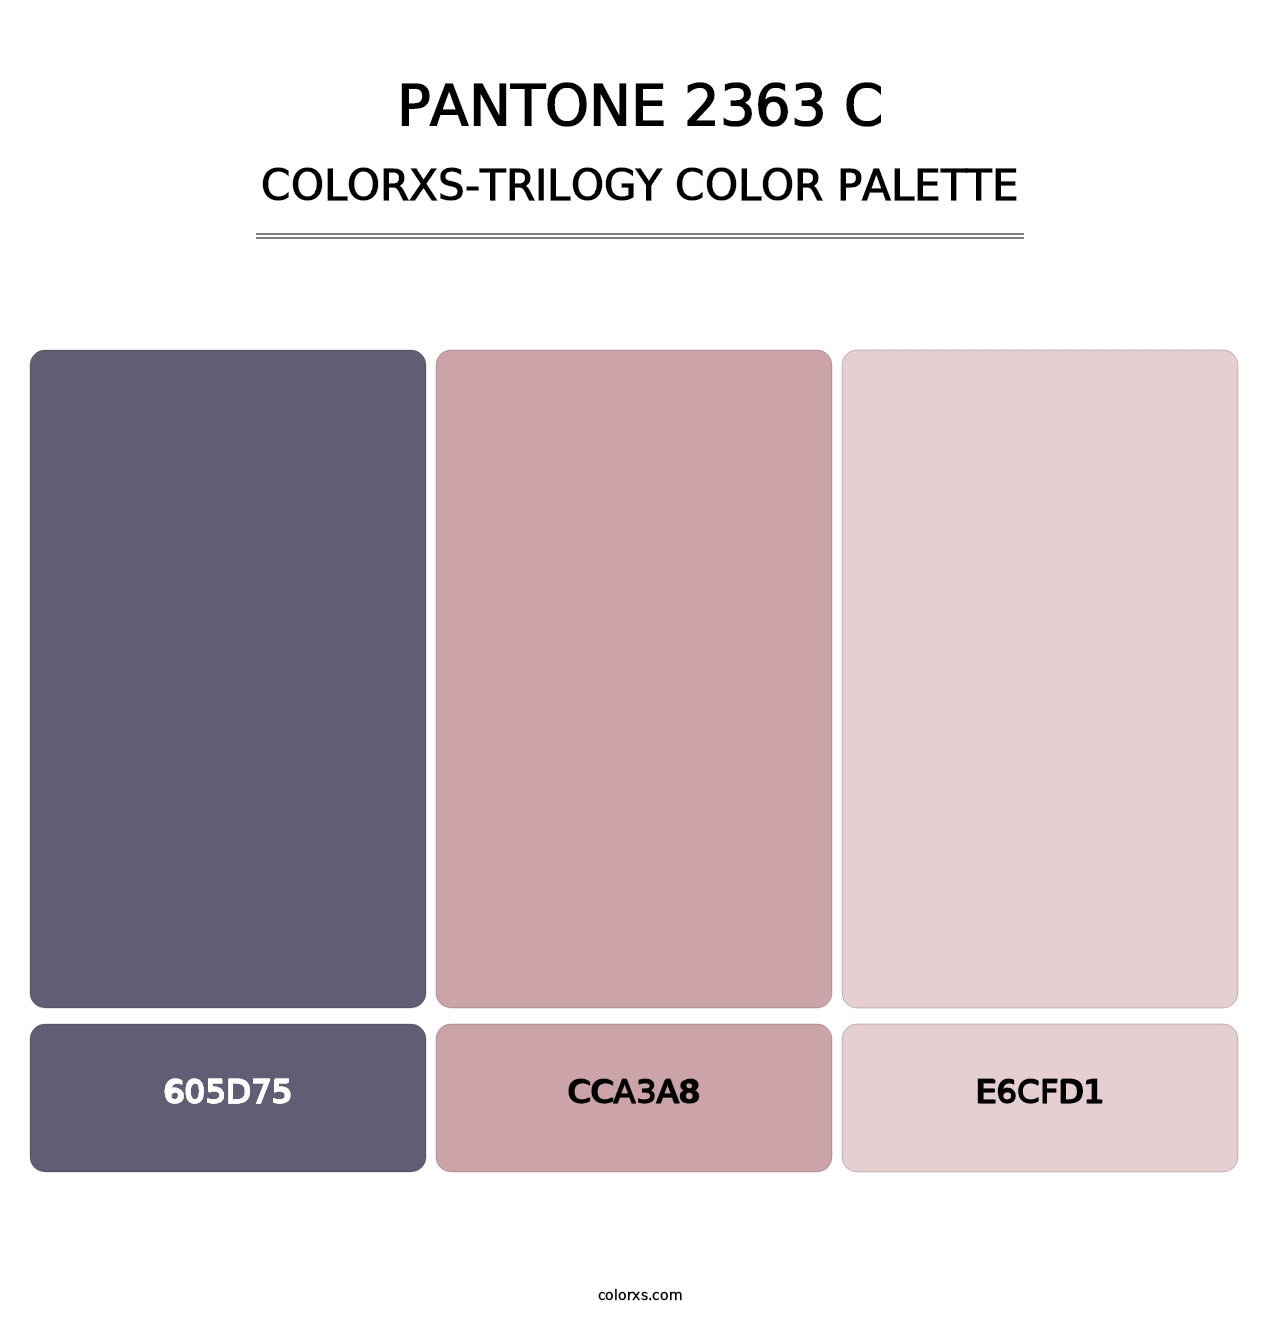 PANTONE 2363 C - Colorxs Trilogy Palette